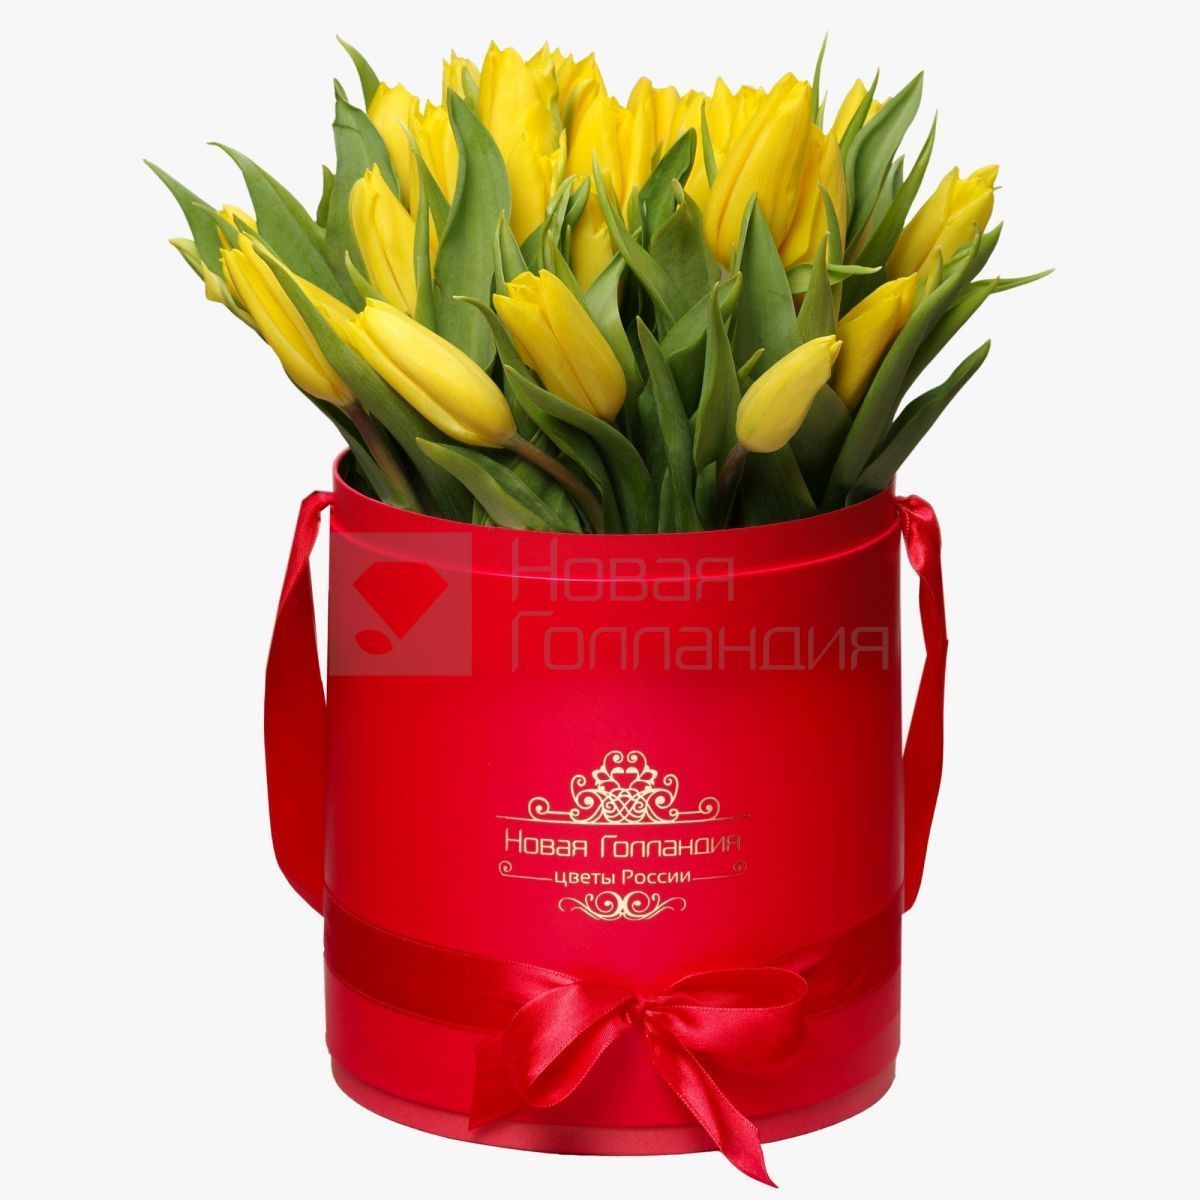 35 желтых тюльпанов в красной шляпной коробке №223